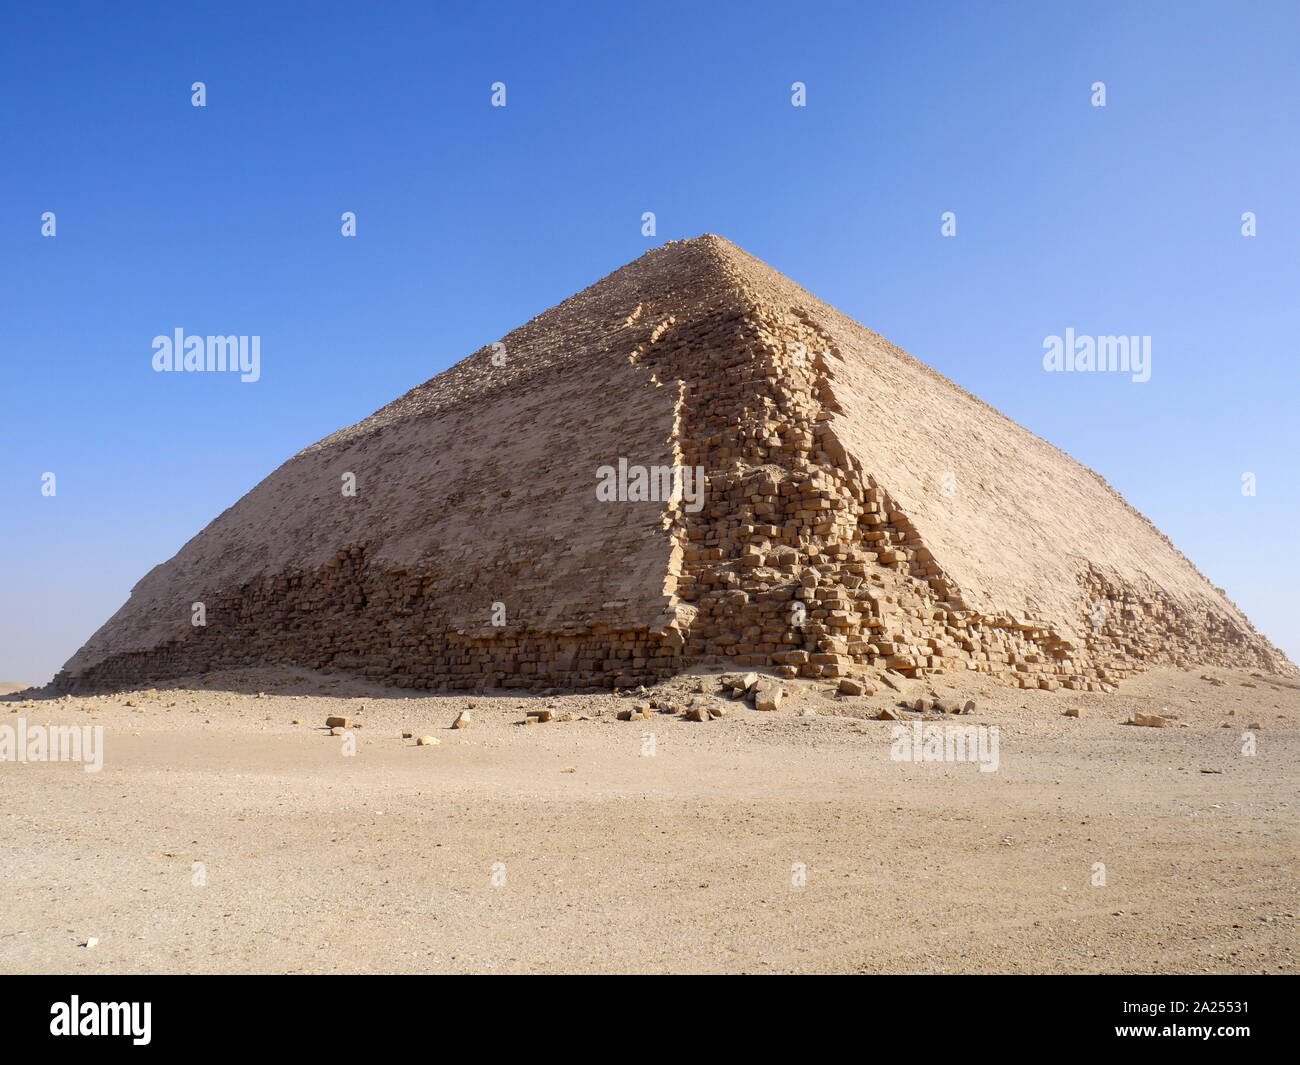 La Piramide piegata è un' antica piramide egizia situato presso il Royal necropoli di Dahshur, circa quaranta chilometri a sud del Cairo, costruito sotto il regno antico faraone Sneferu (c. 2600 BC). Un esempio unico di precoce sviluppo piramide in Egitto, questa è stata la seconda piramide costruita da Sneferu. La Piramide piegata sorge dal deserto a 54 gradi di inclinazione, ma la sezione superiore (sopra i 47 metri) è costruito a profondità ridotta angolazione di 43 gradi, prestito la piramide è molto evidente 'piegato' aspetto. Foto Stock